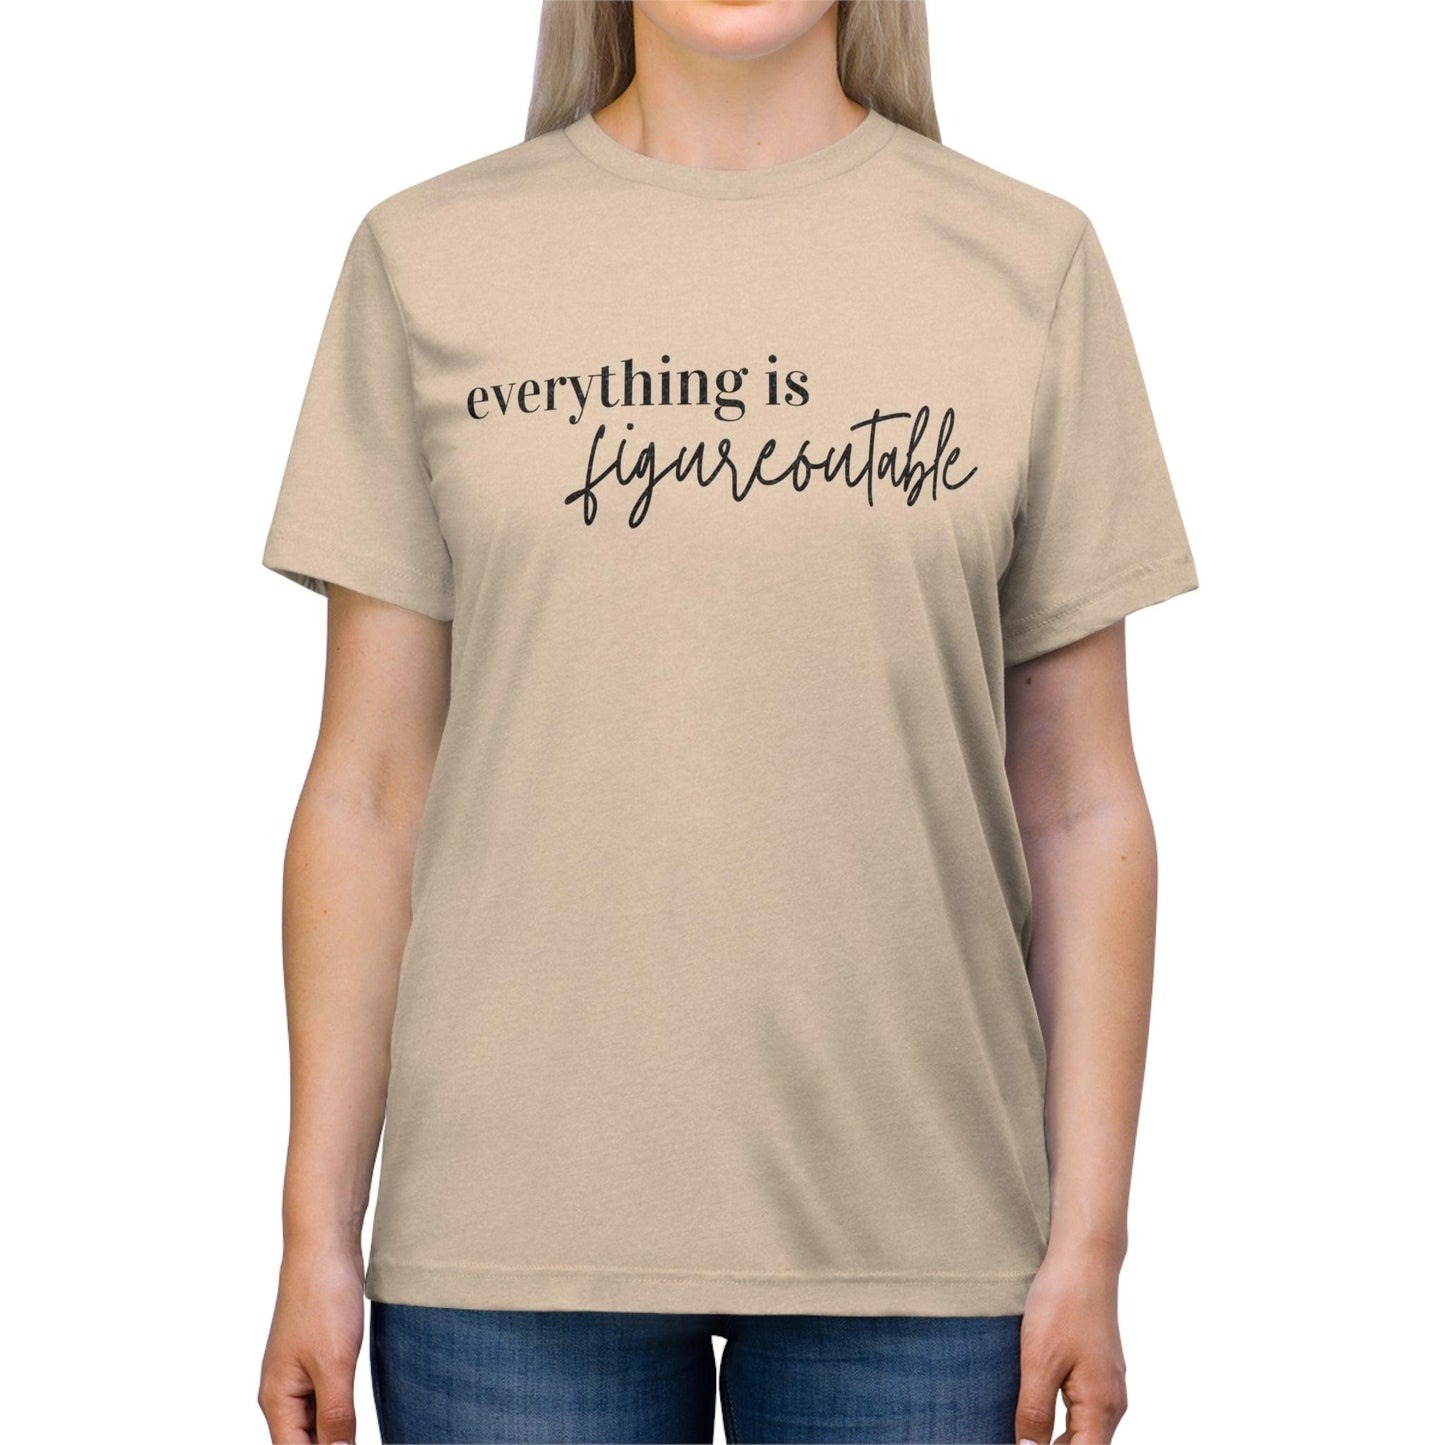 Everything is Figureoutable T-shirt - BentleyBlueCo